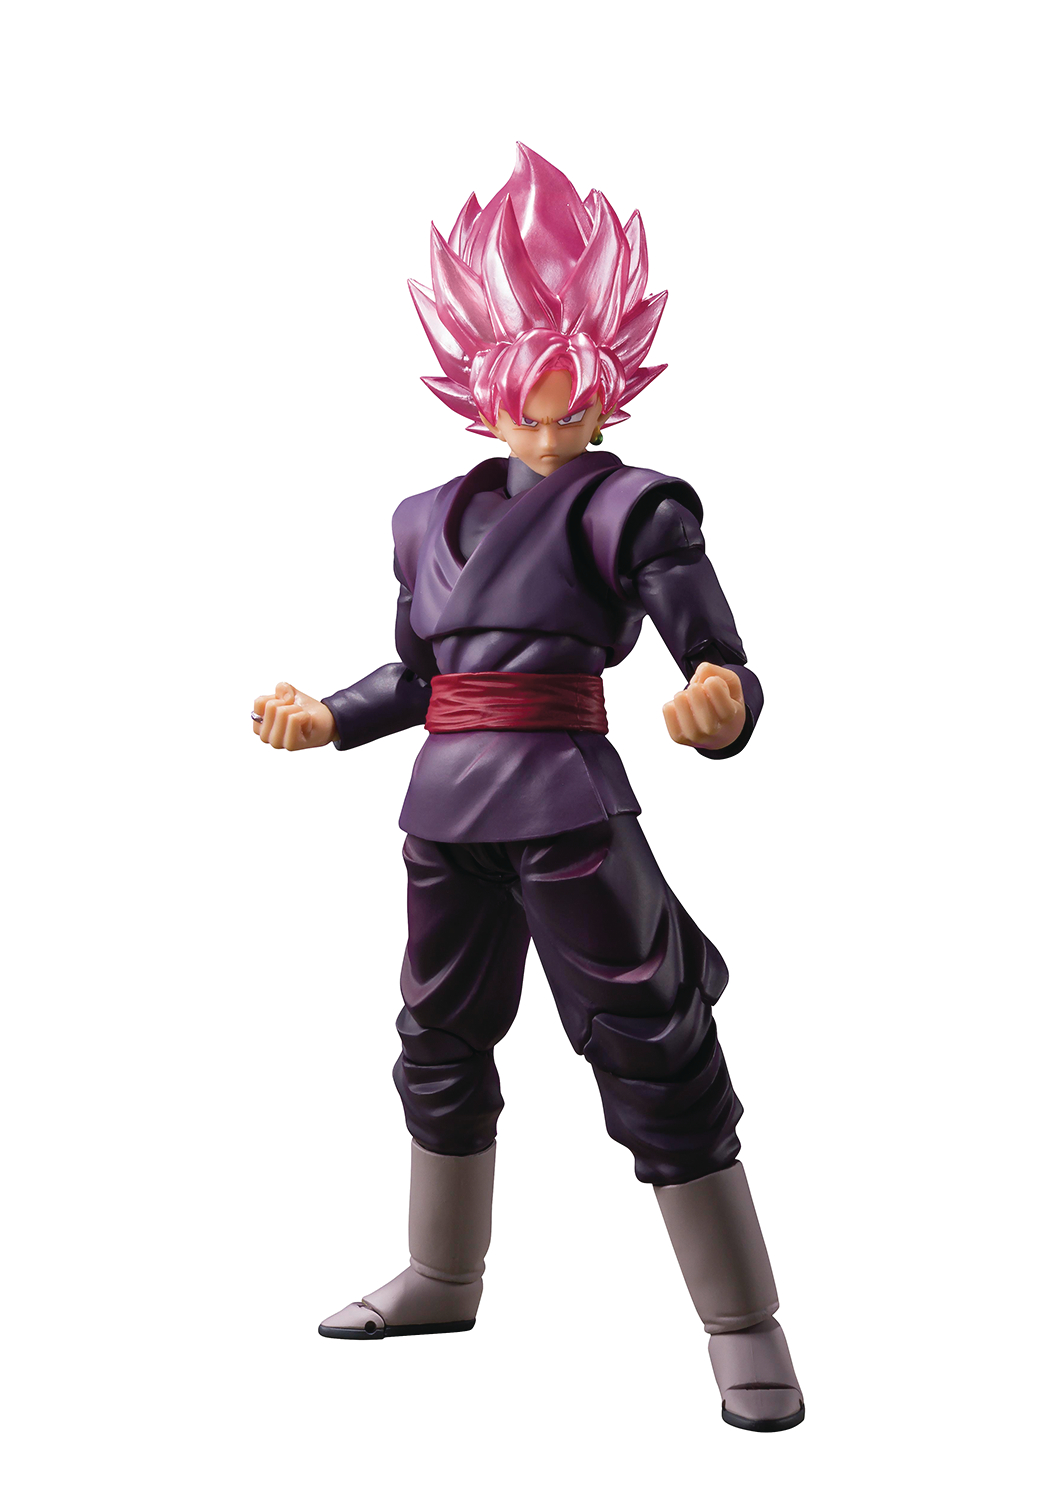 Db Super Super Saiyan Rose Goku Black S.H.Figuarts Action Figure